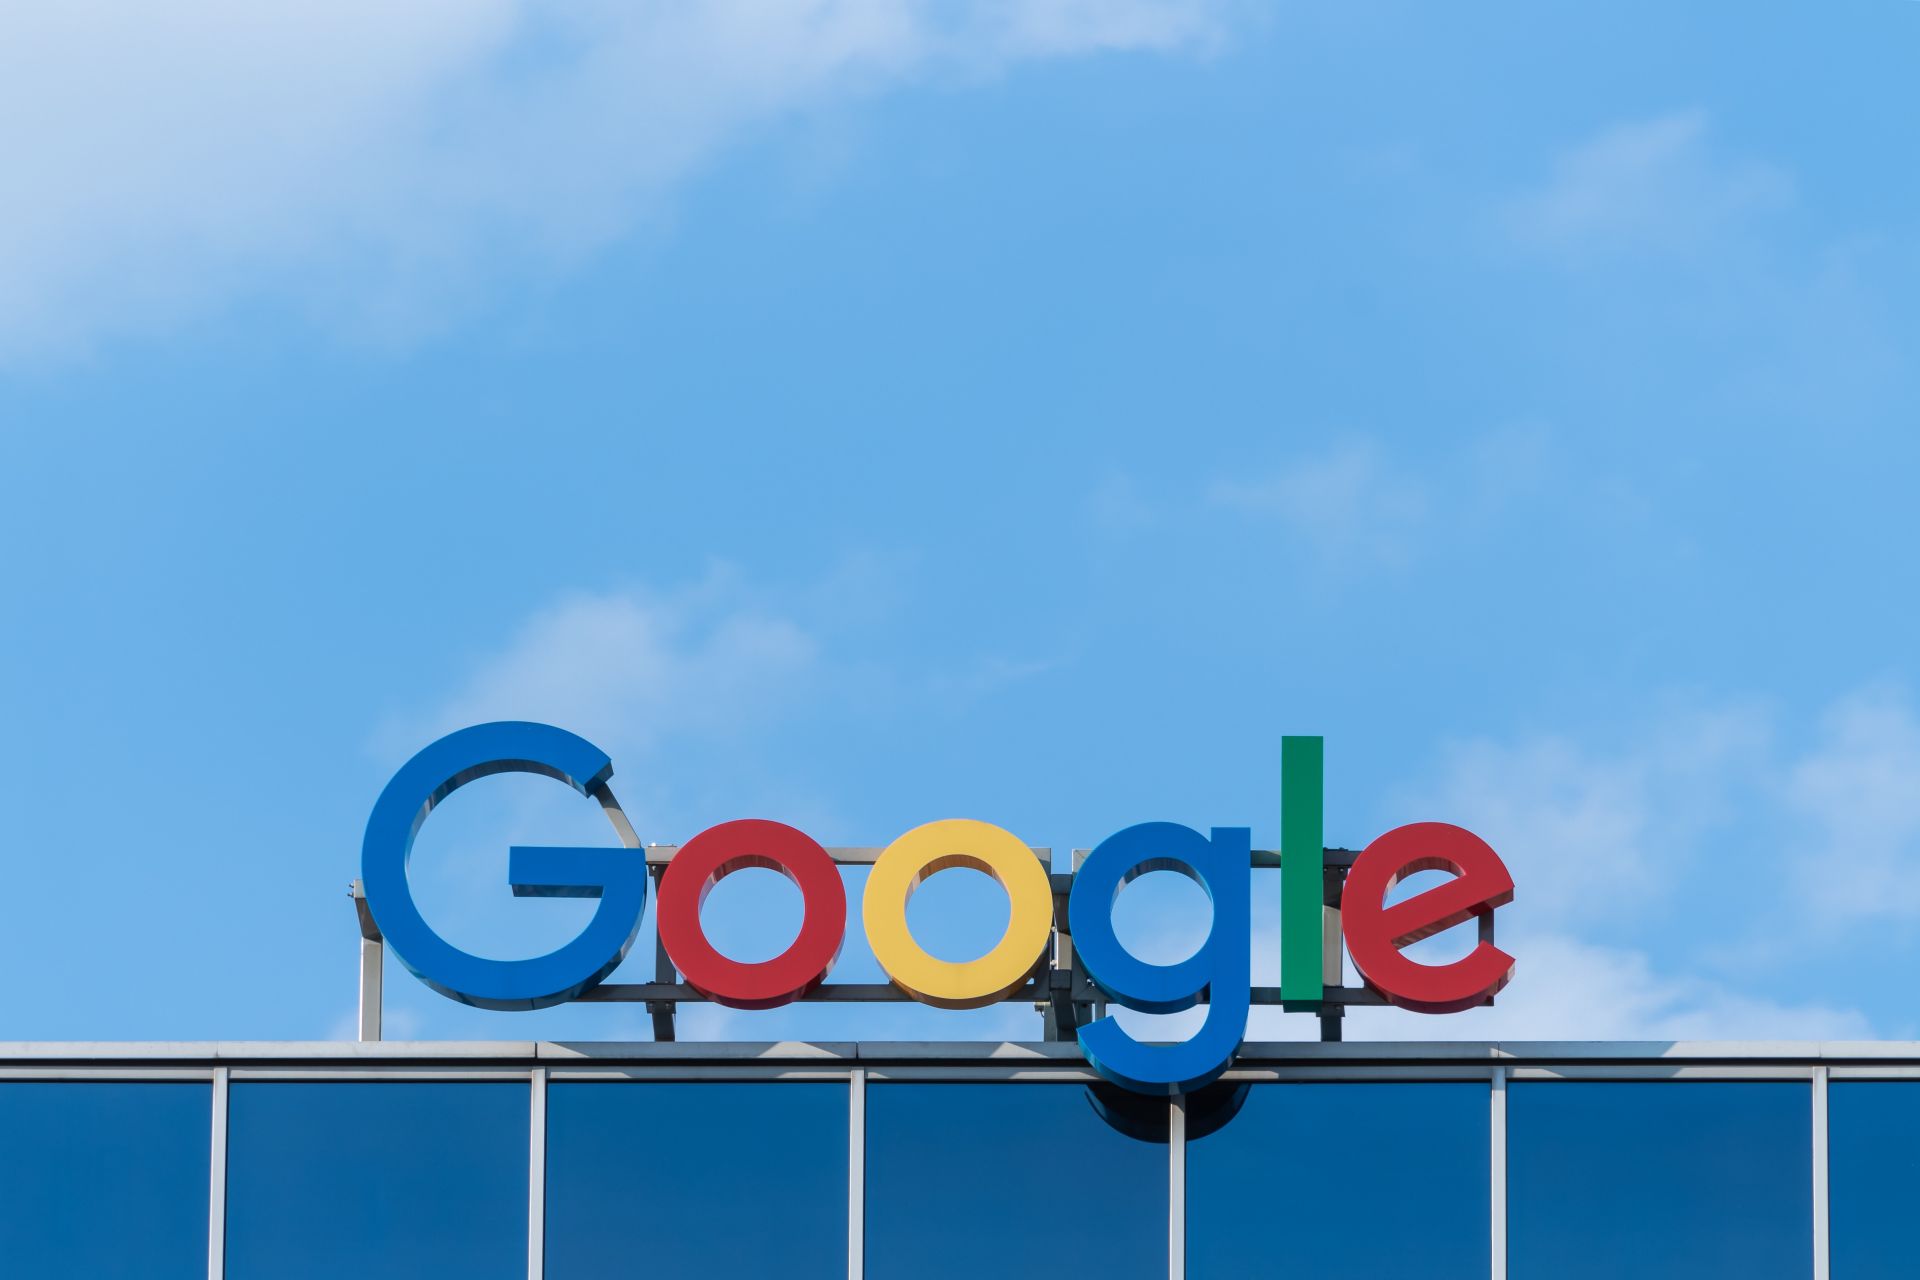 Google incognito lawsuit